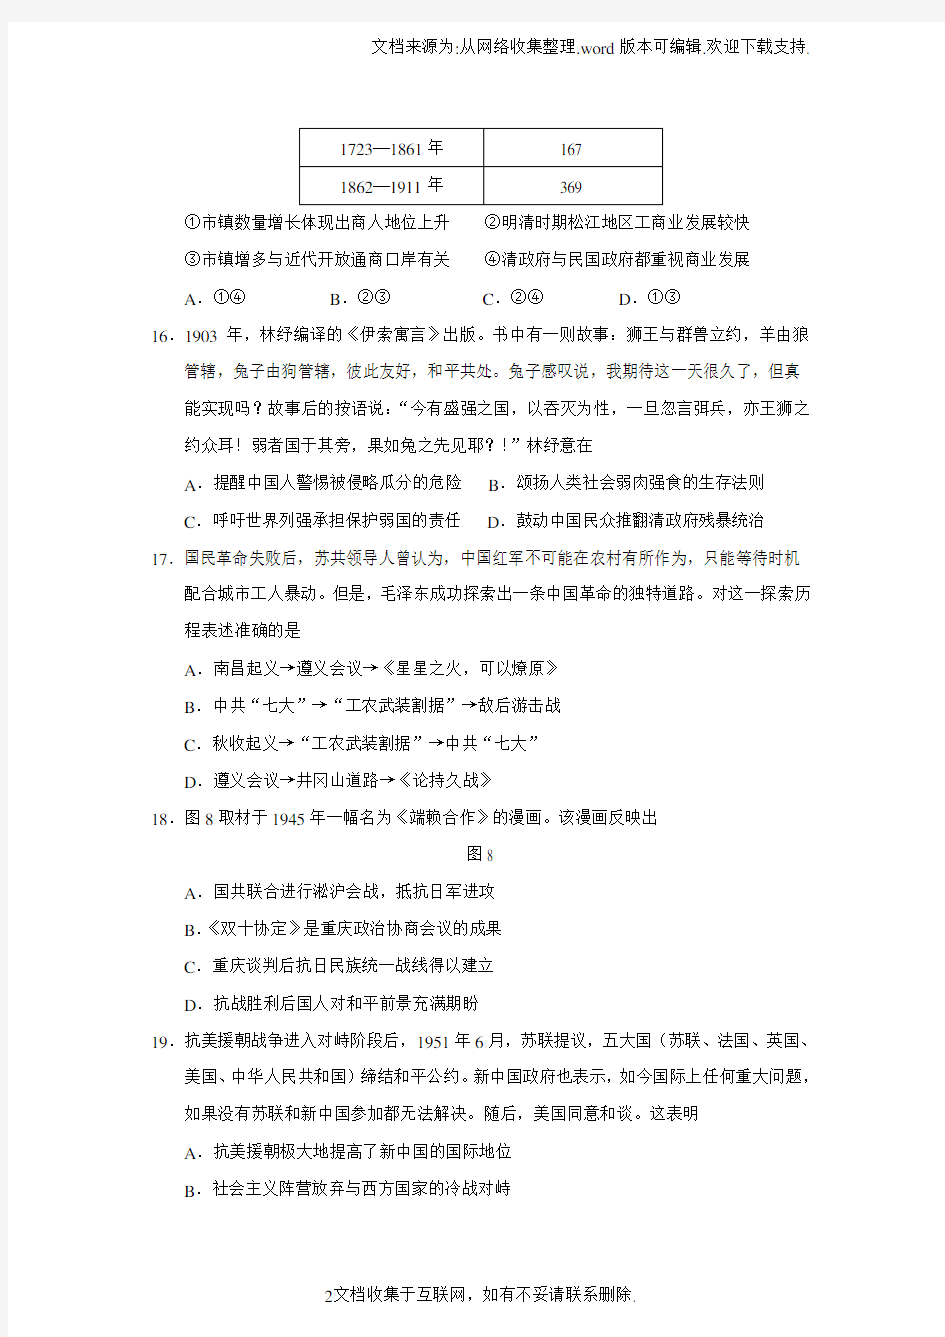 2020年高考北京文综(历史)卷